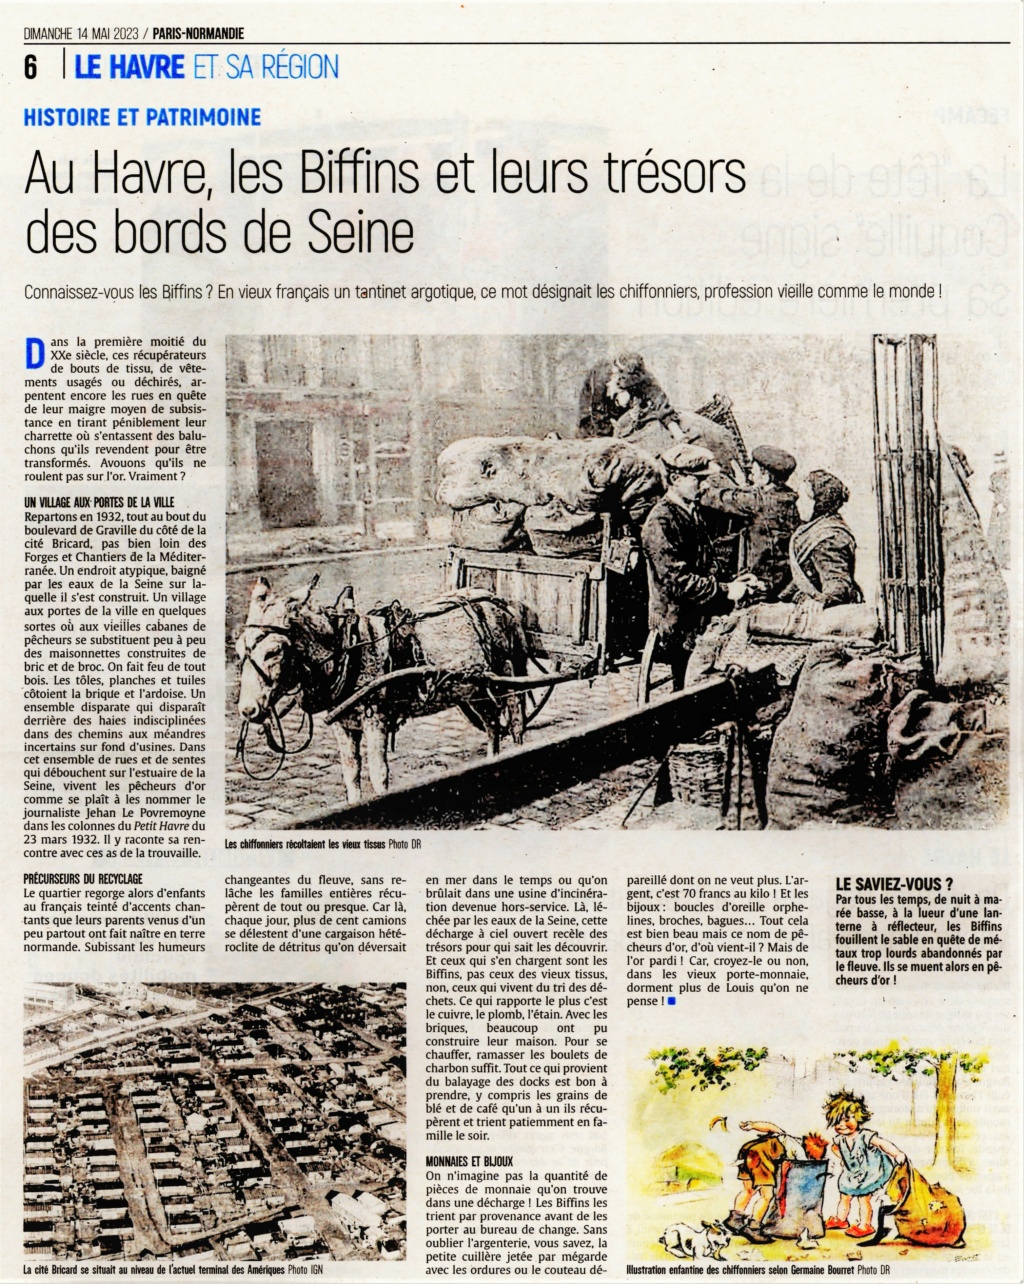 Au Havre, les Biffins (Chiffonniers) et leurs trésors des bords de Seine 2023-047